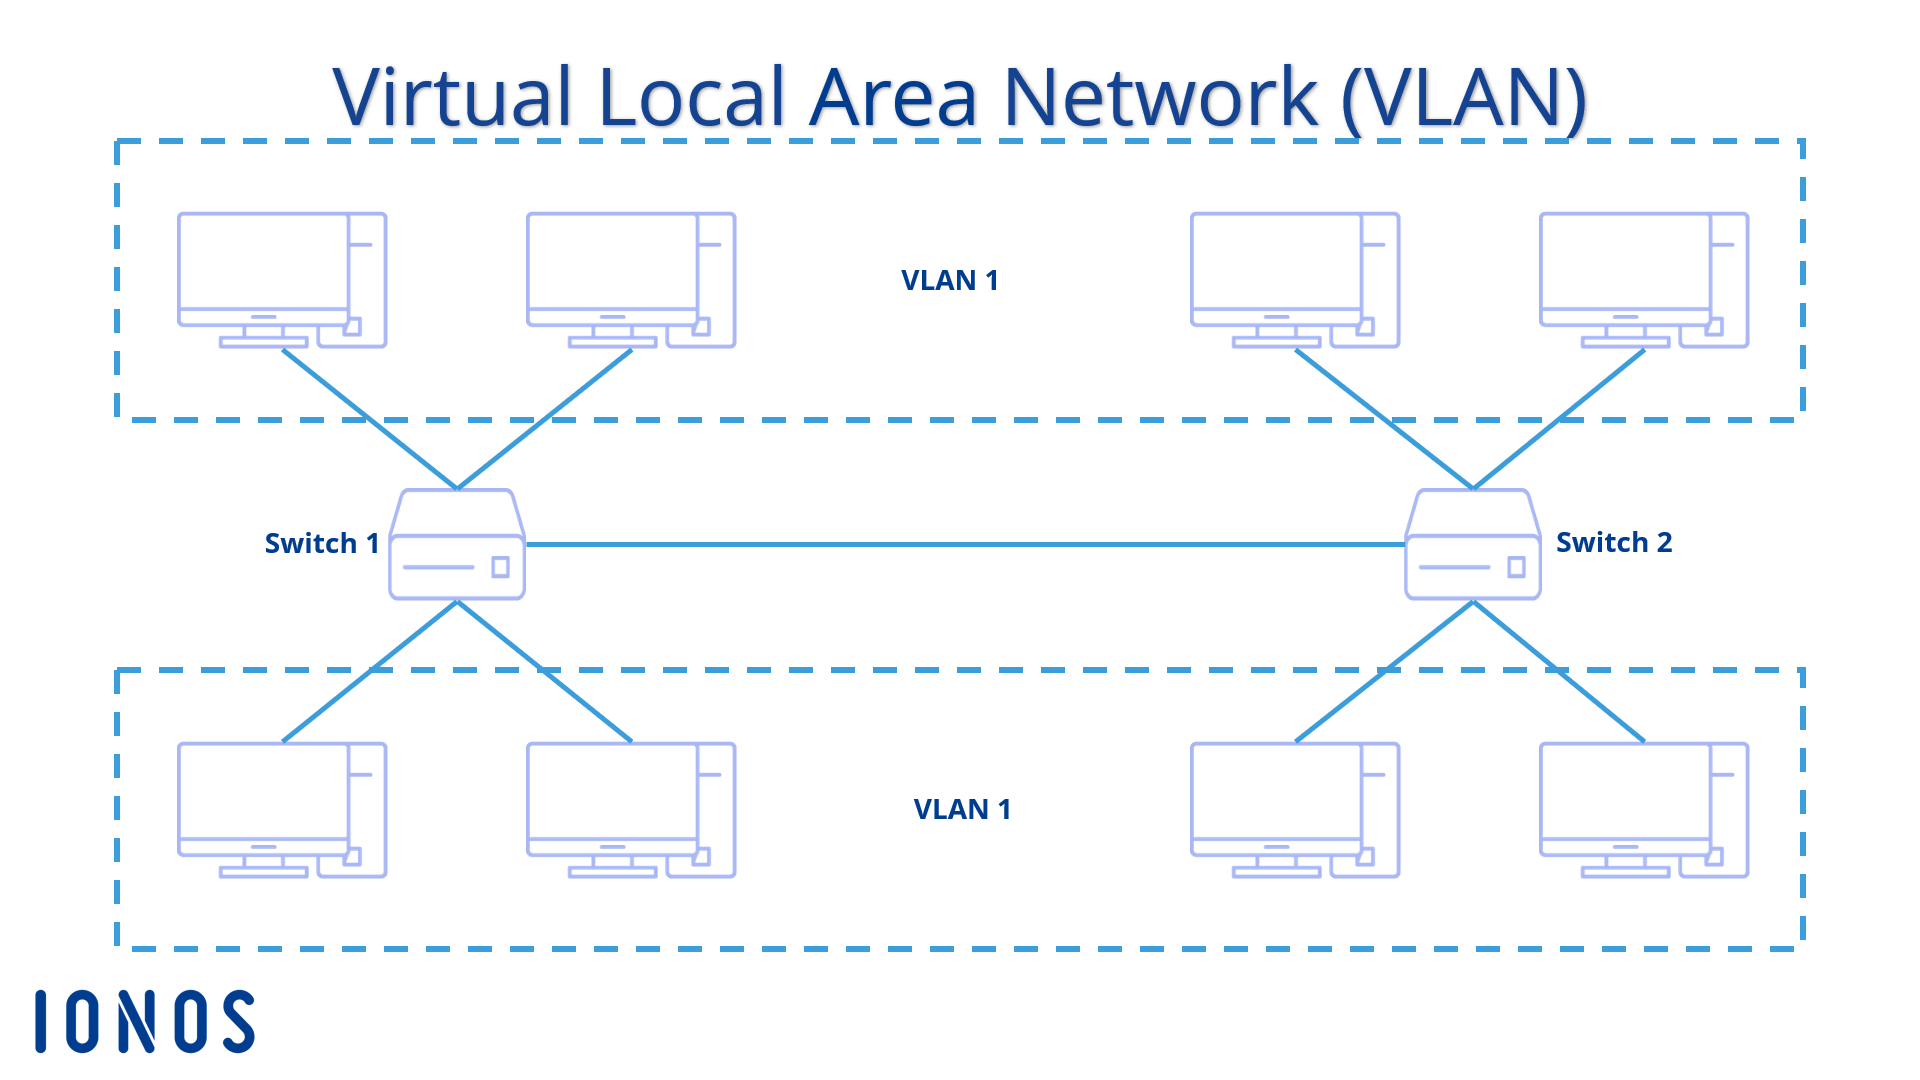 Configurazione schematica di due VLAN